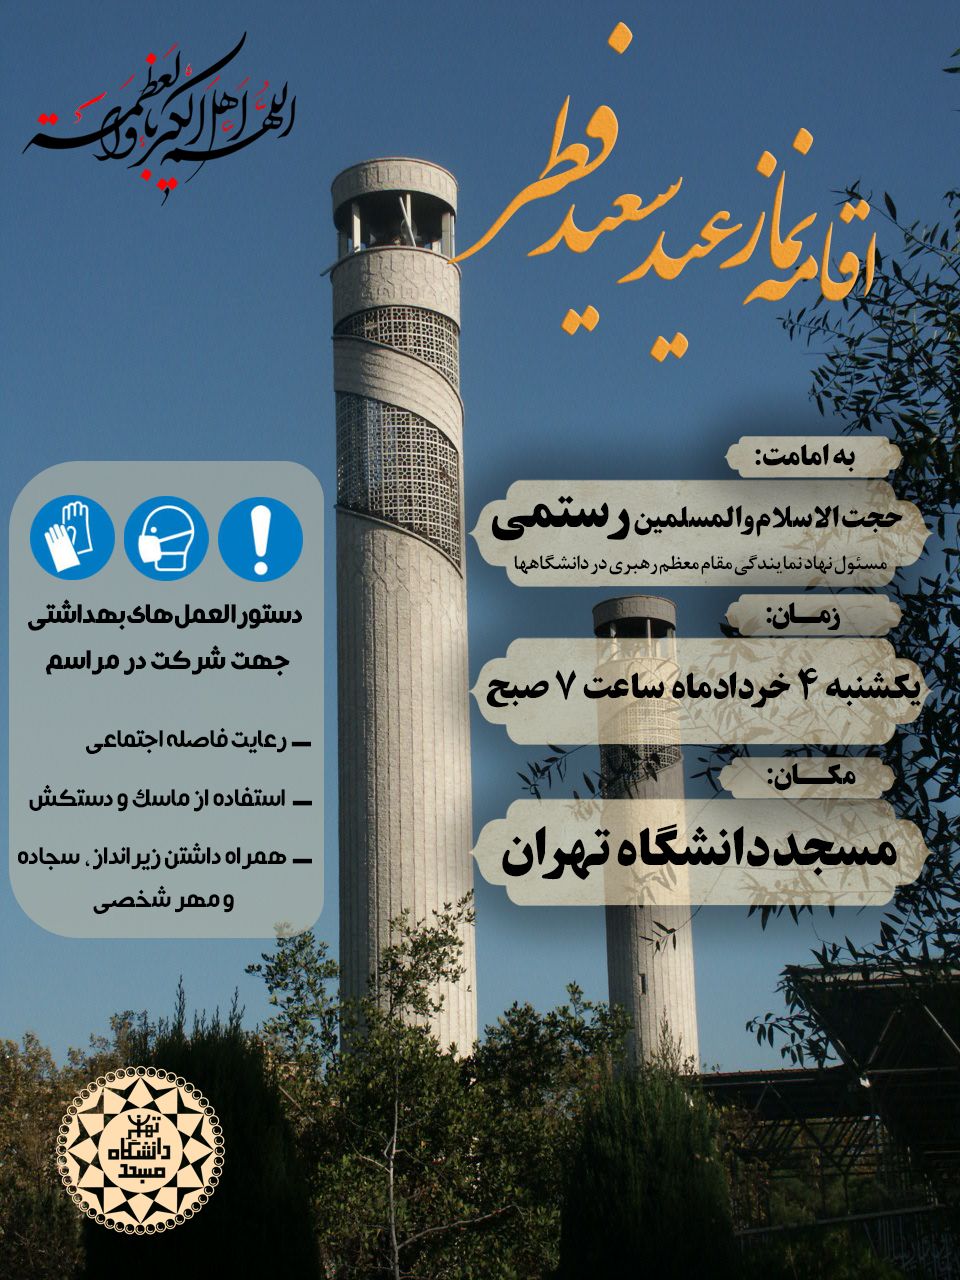 نماز عید سعید فطر در مسجد دانشگاه تهران اقامه می شود